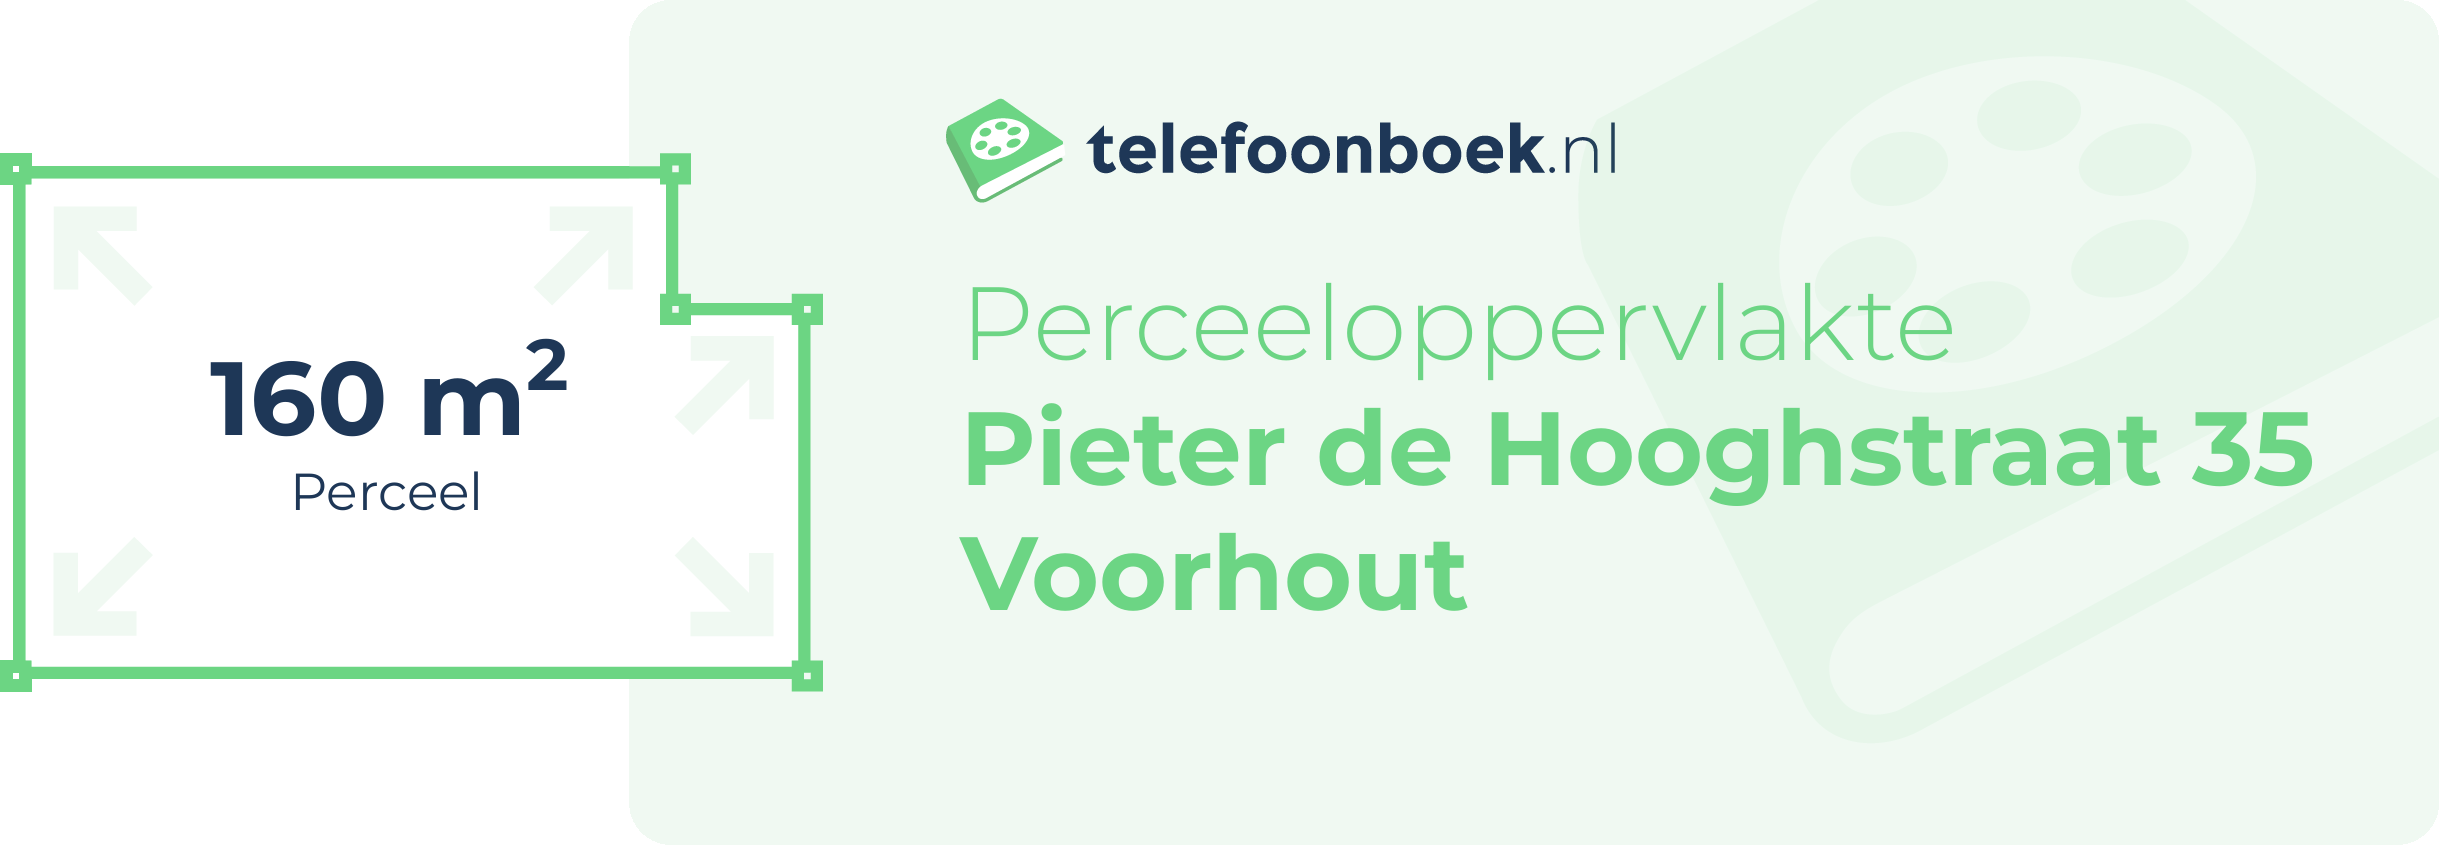 Perceeloppervlakte Pieter De Hooghstraat 35 Voorhout